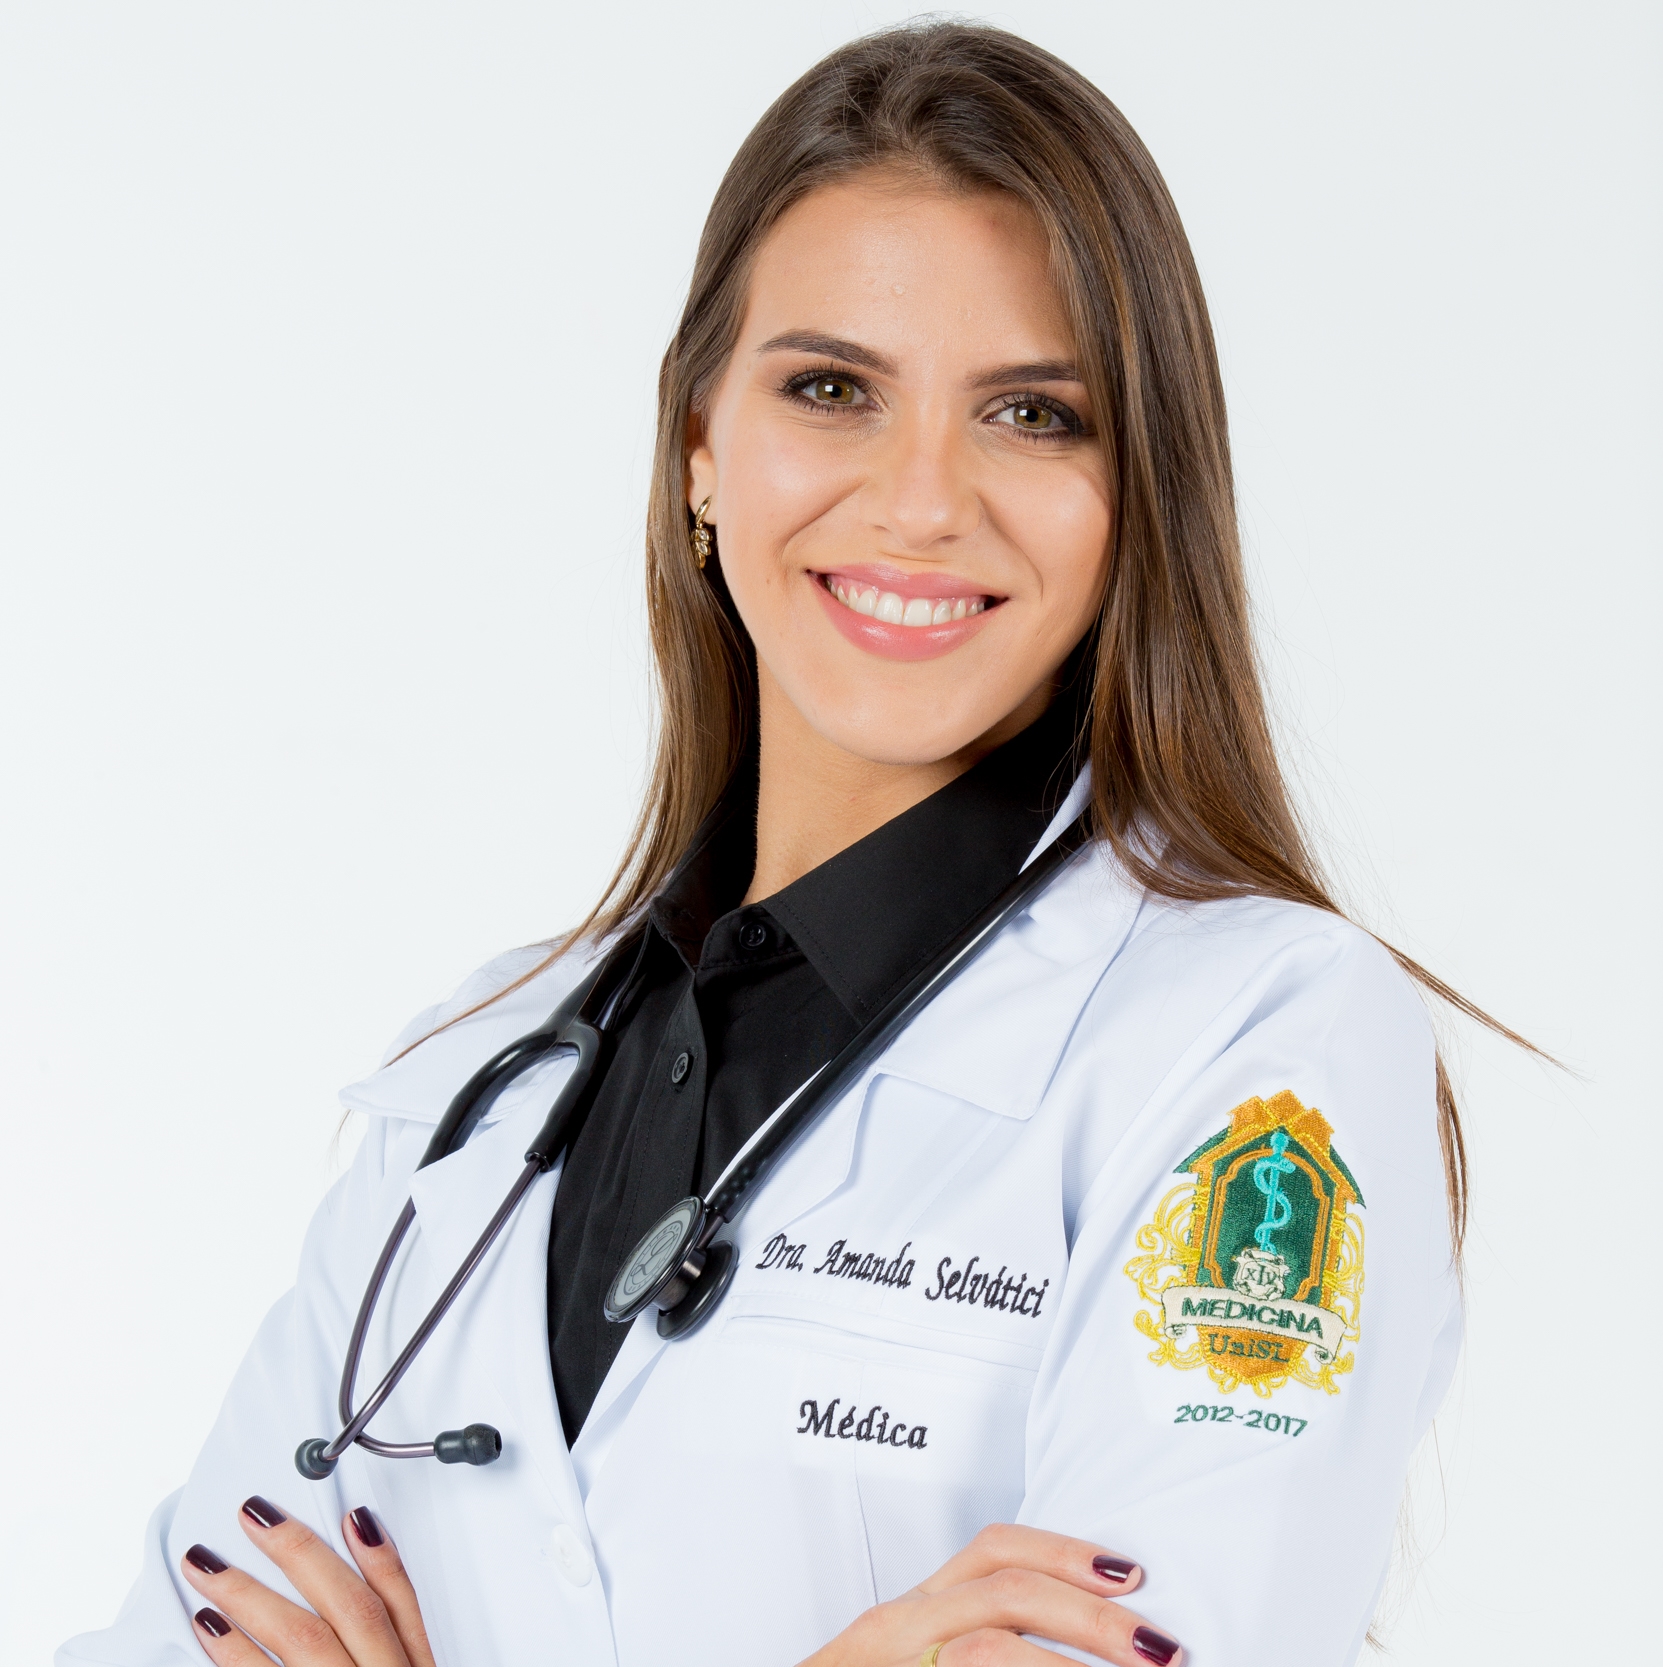 Dra. Amanda Selvátici dos Santos Dias